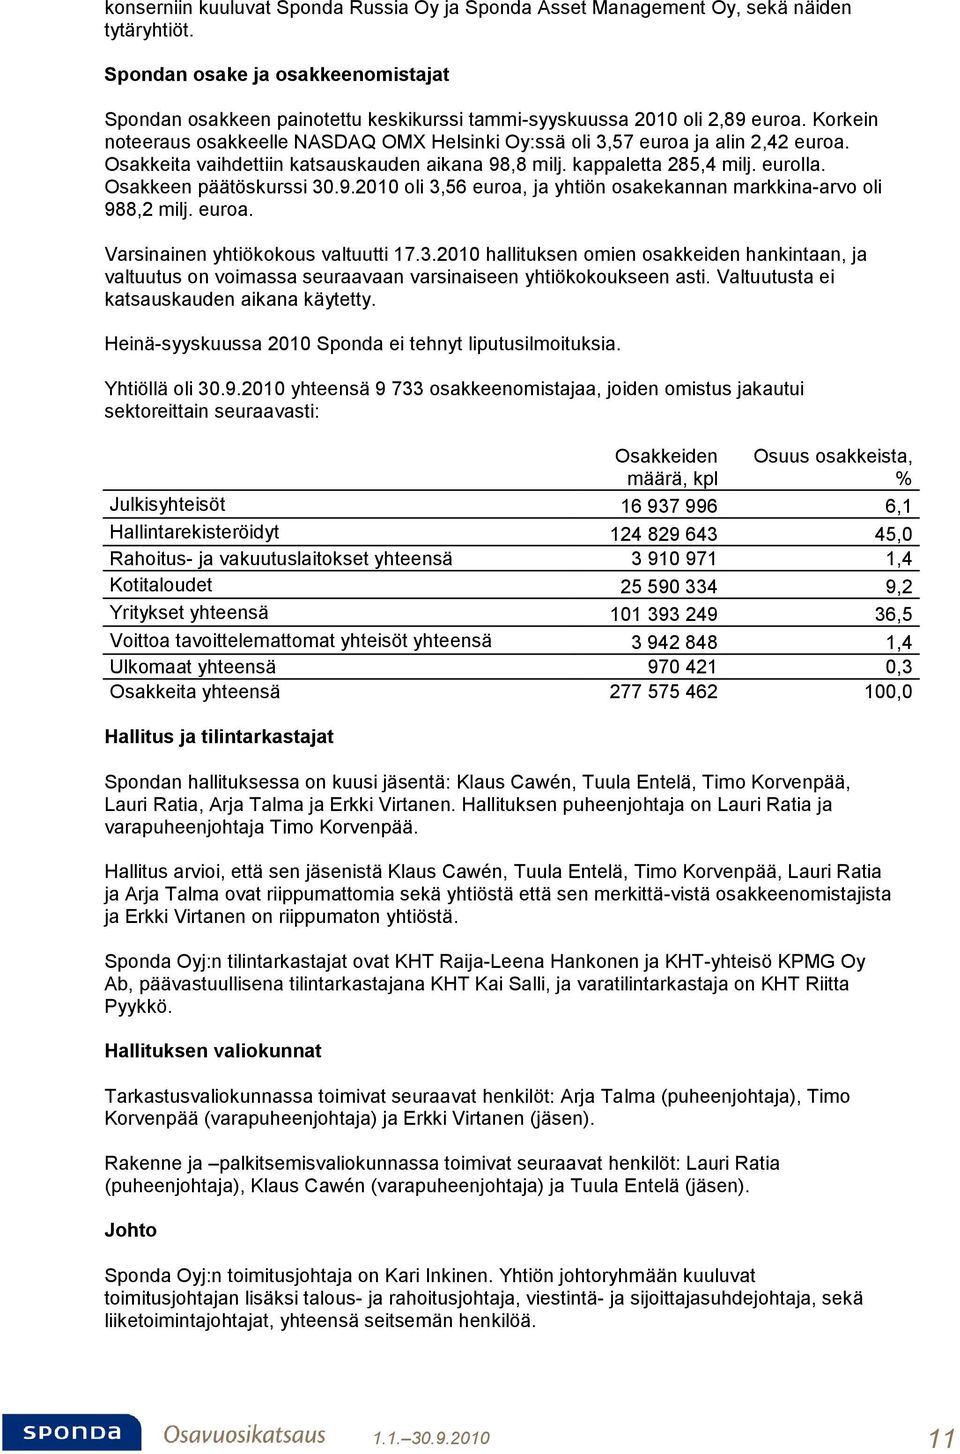 Korkein noteeraus osakkeelle NASDAQ OMX Helsinki Oy:ssä oli 3,57 euroa ja alin 2,42 euroa. Osakkeita vaihdettiin katsauskauden aikana 98,8 milj. kappaletta 285,4 milj. eurolla.